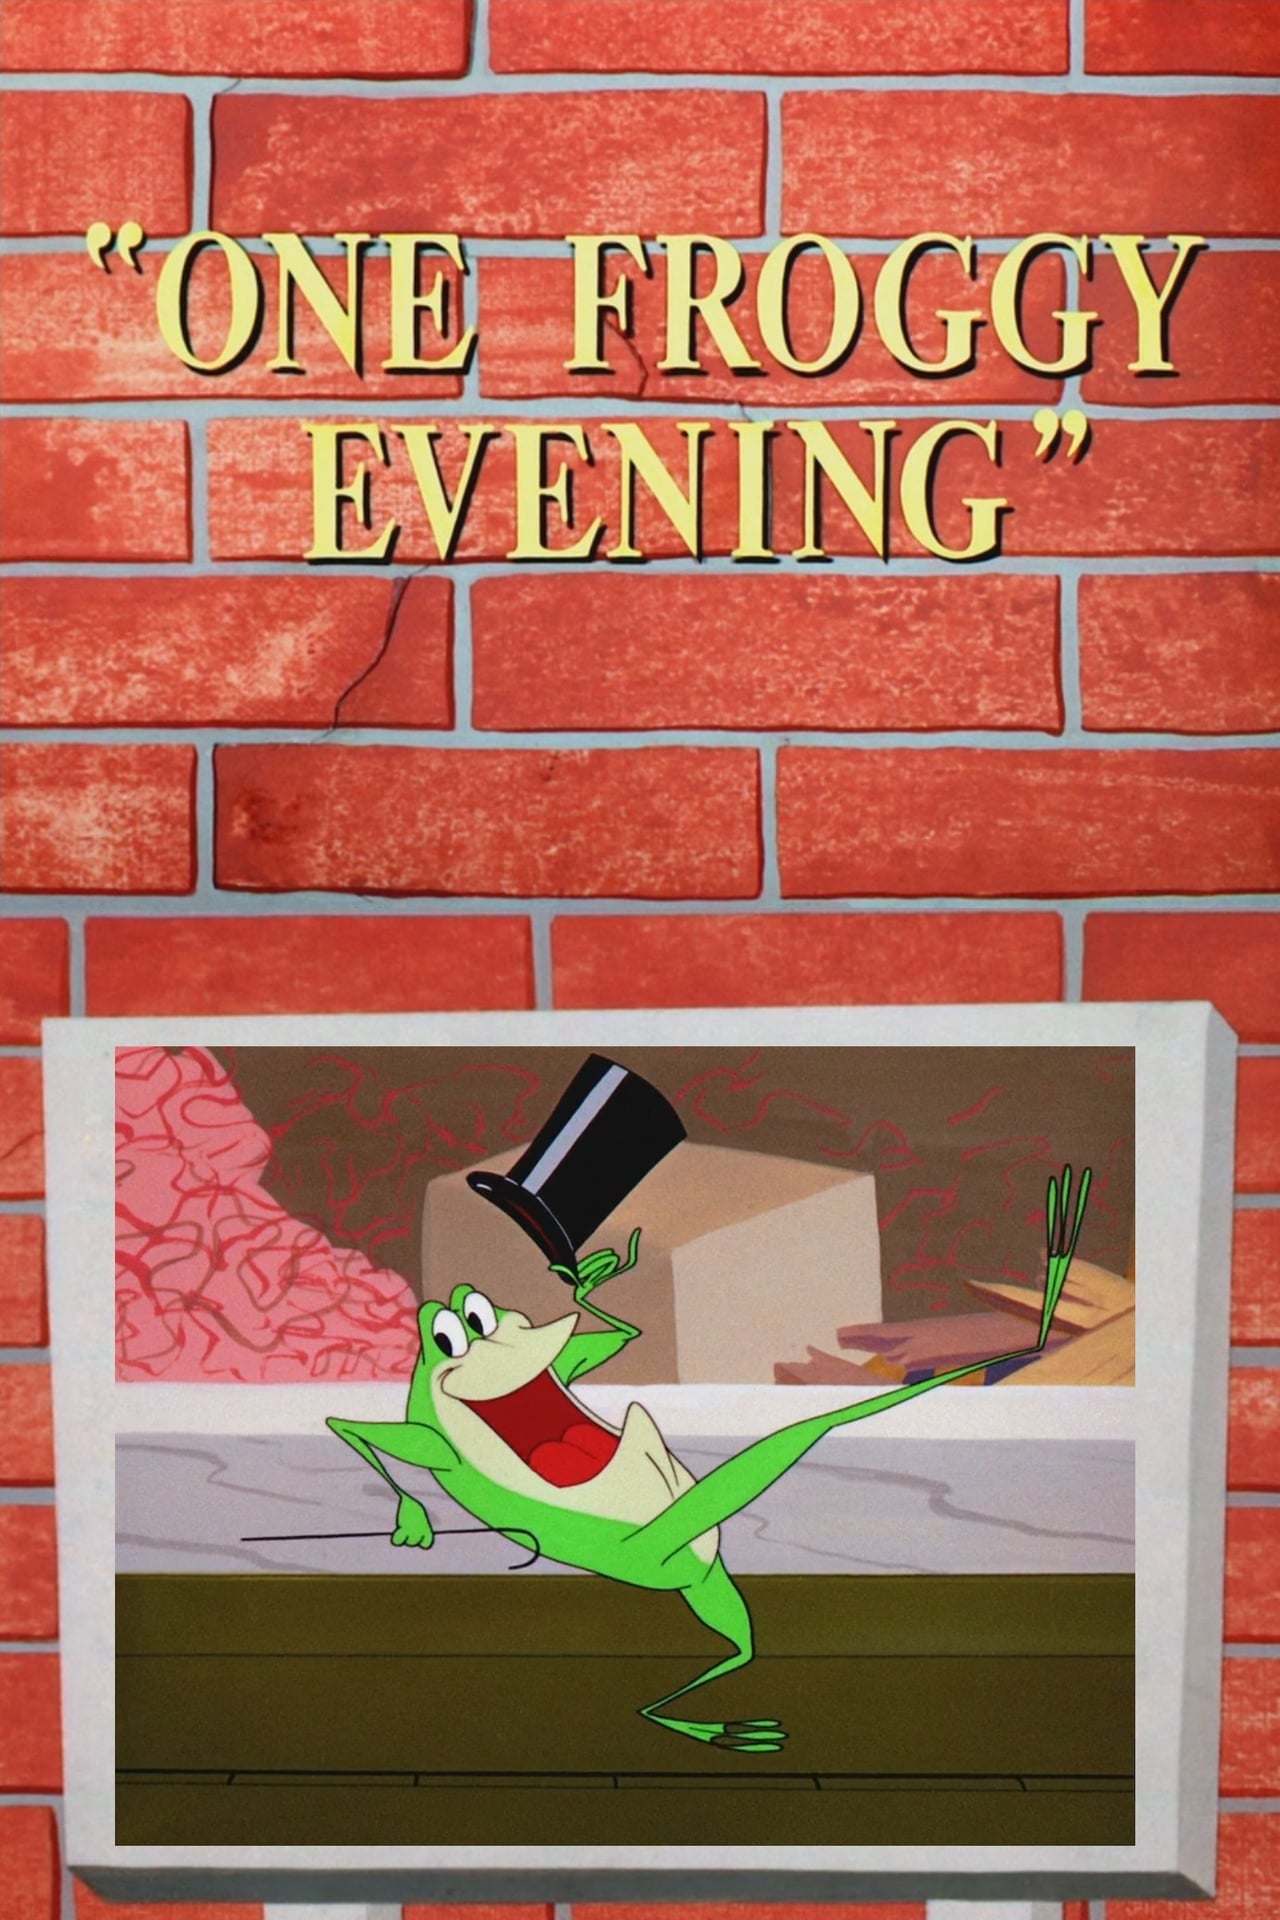 Der singende Frosch